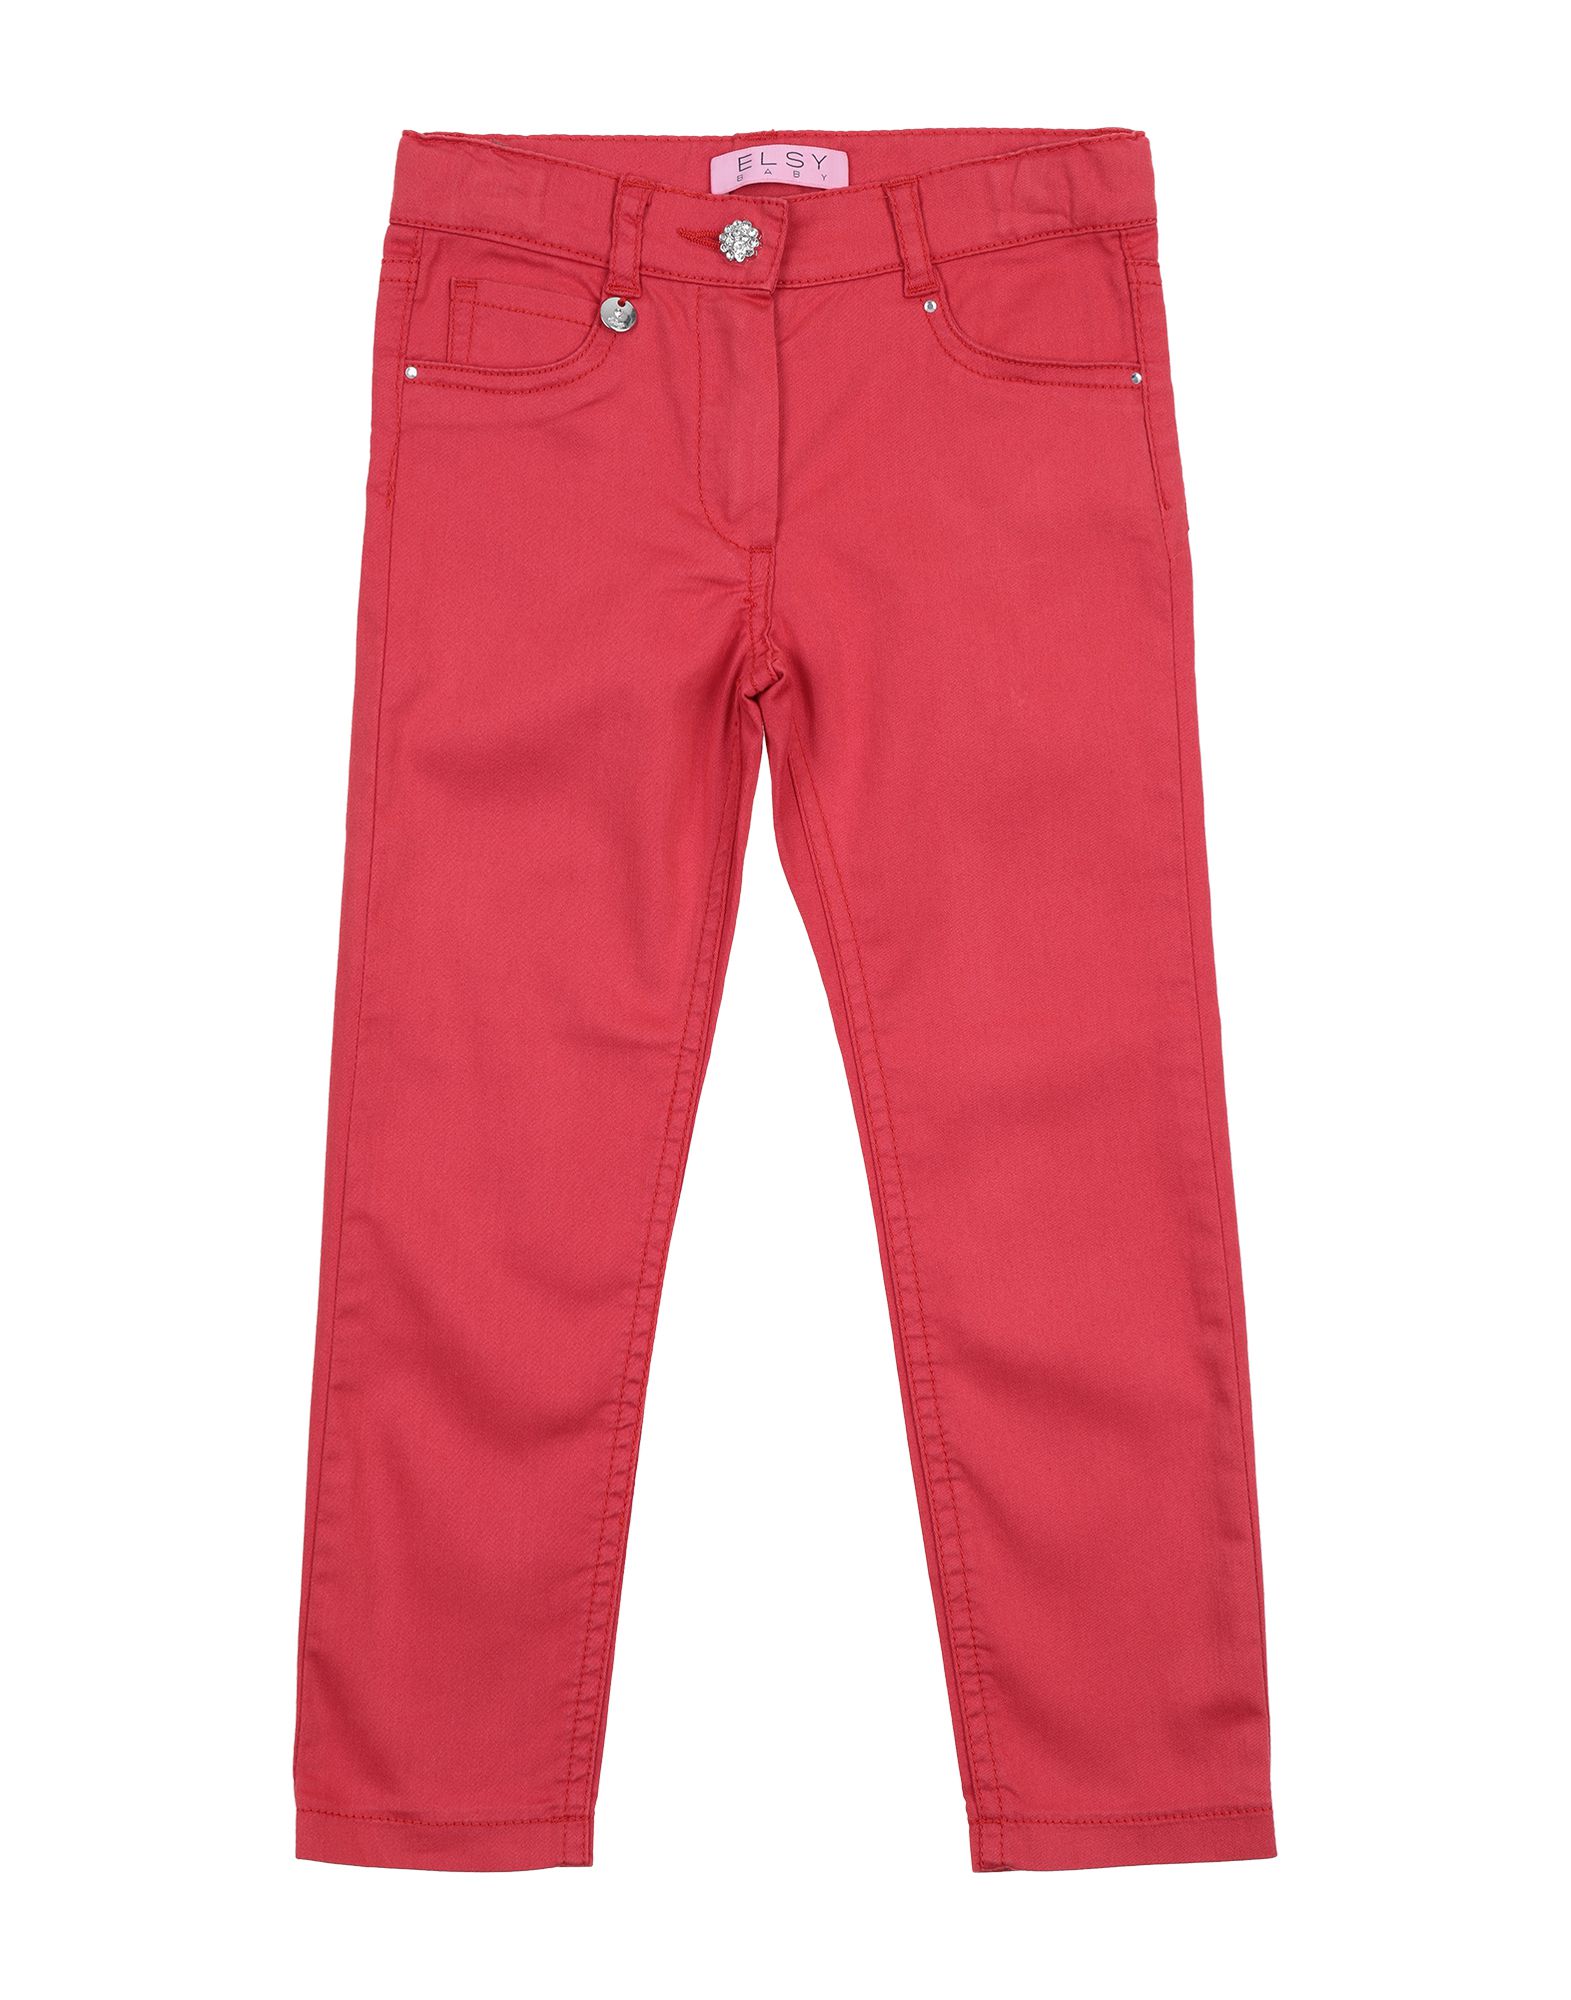 Elsy Kids' Pants In Red